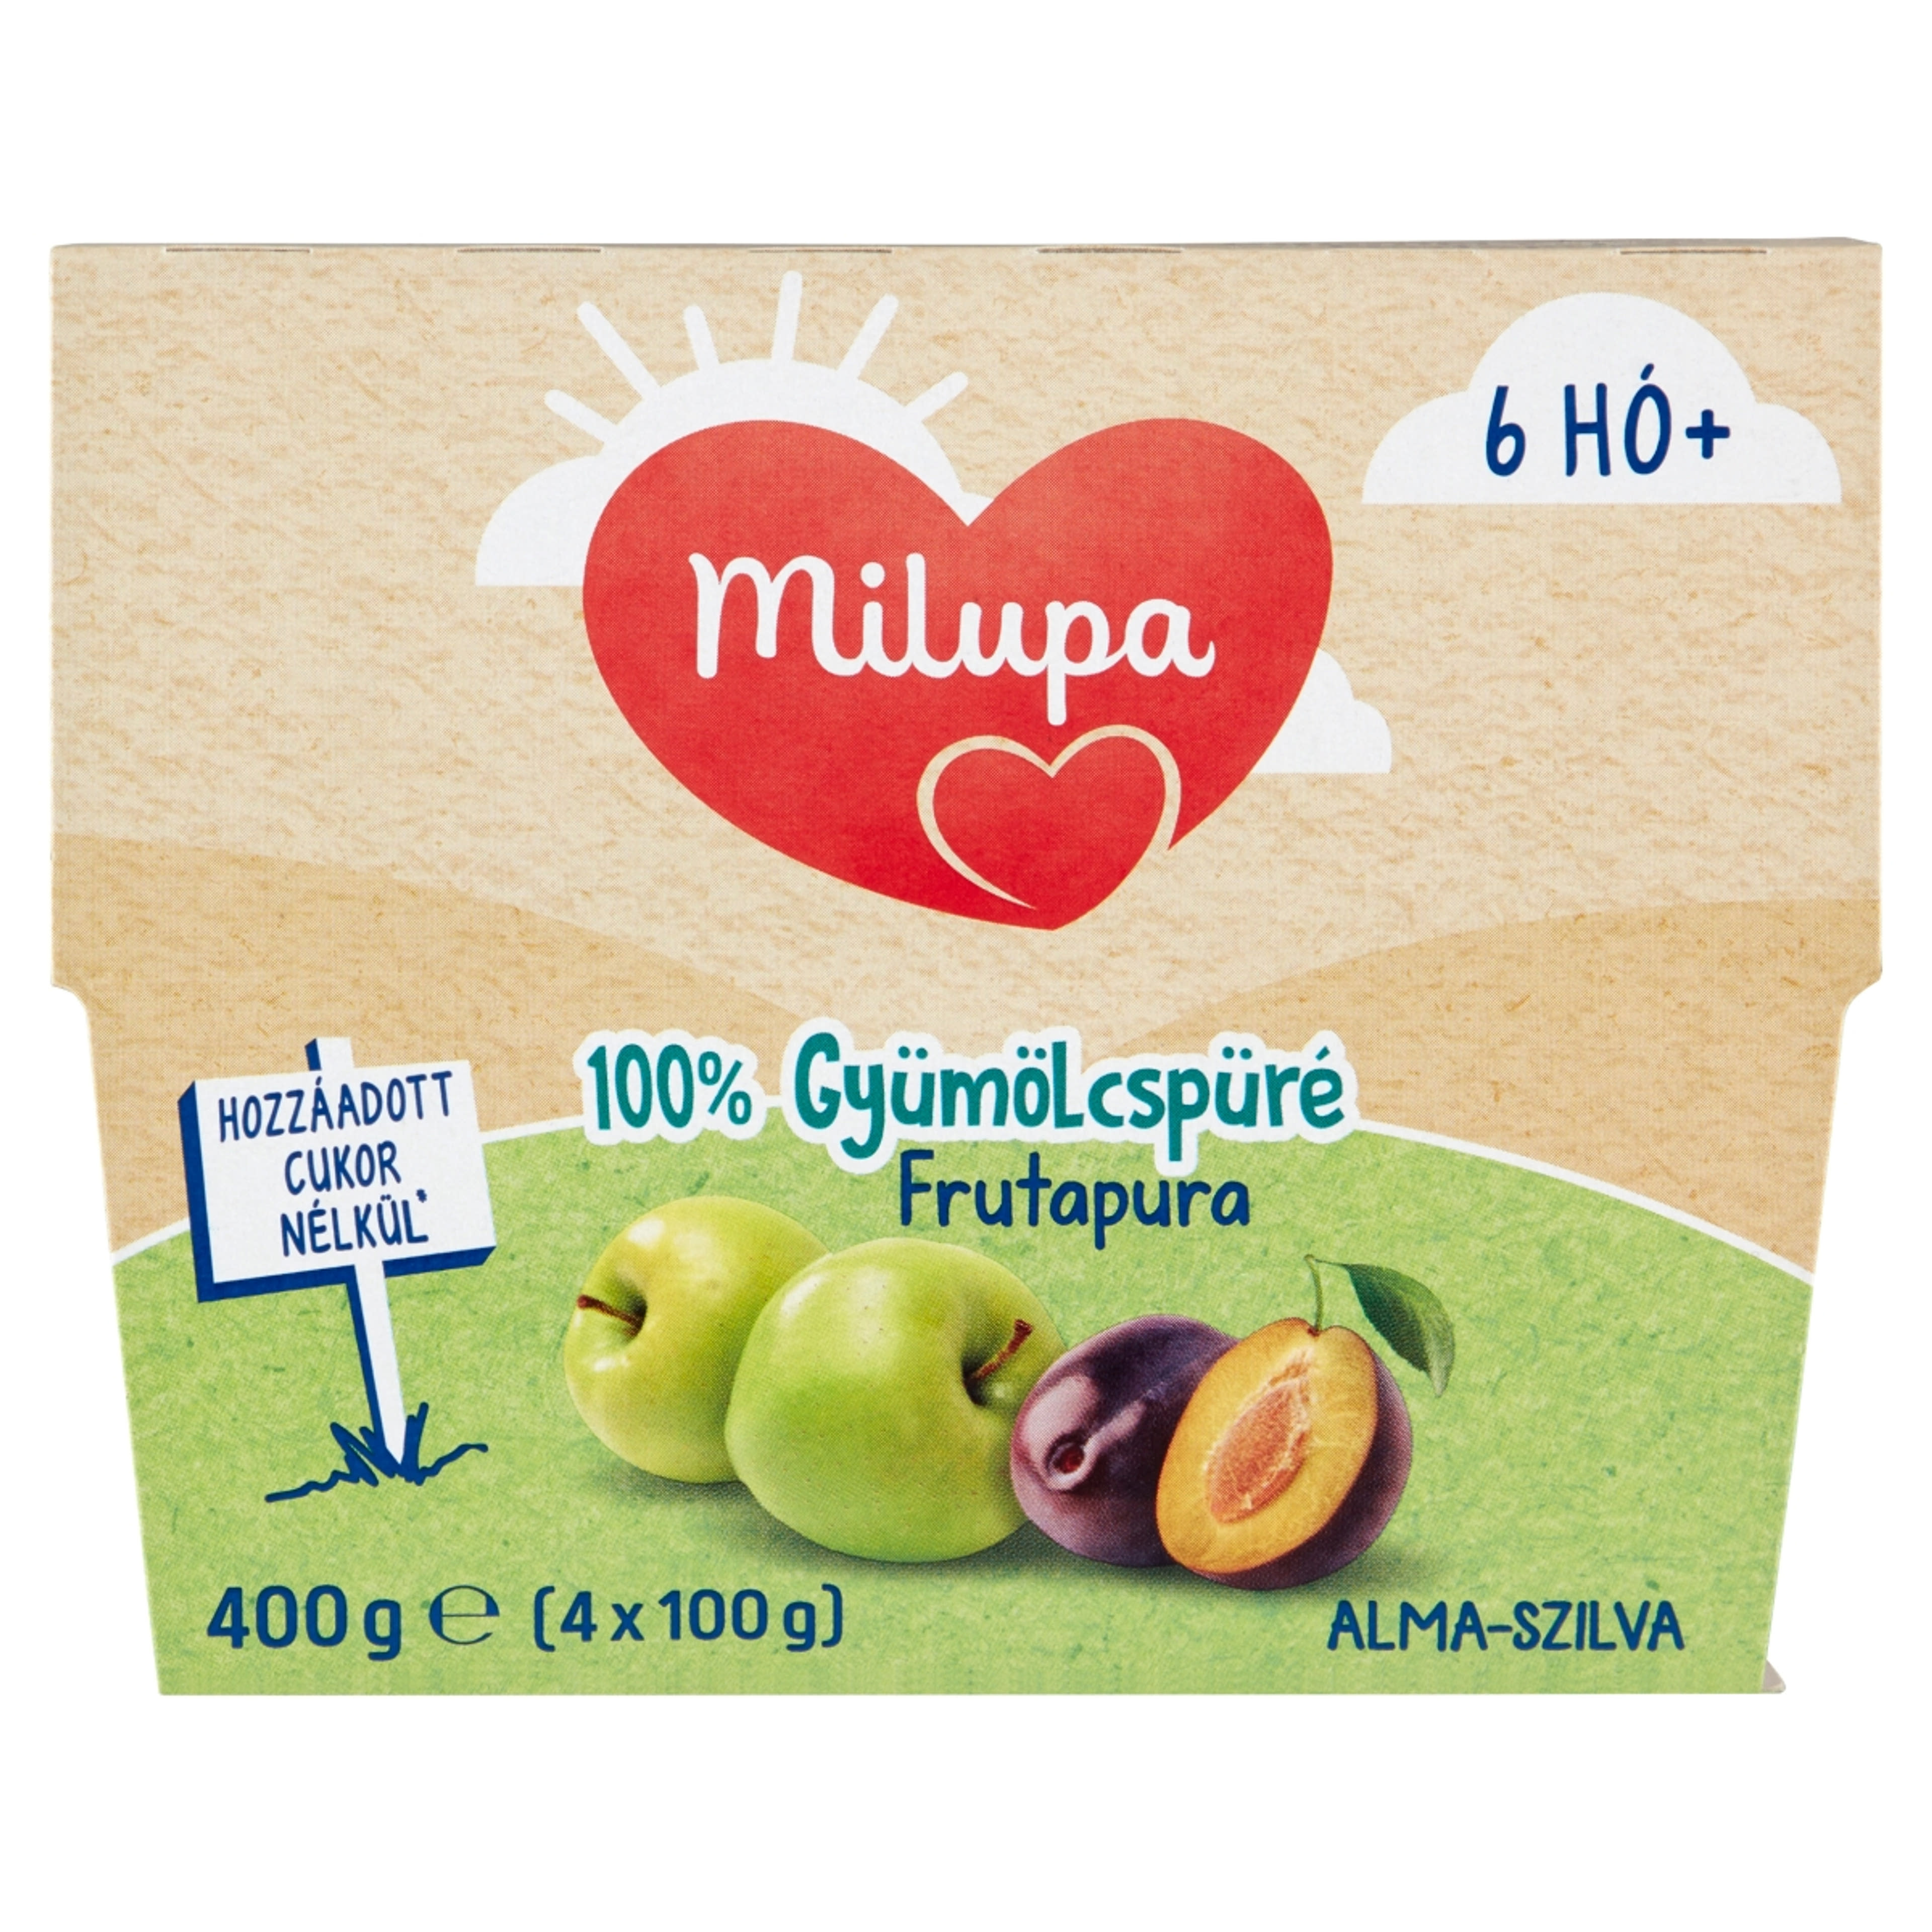 Milupa Frutapura Gyümölcspép Alma- Szilva 6-36 Hónapos Kor Között - 4x100 g